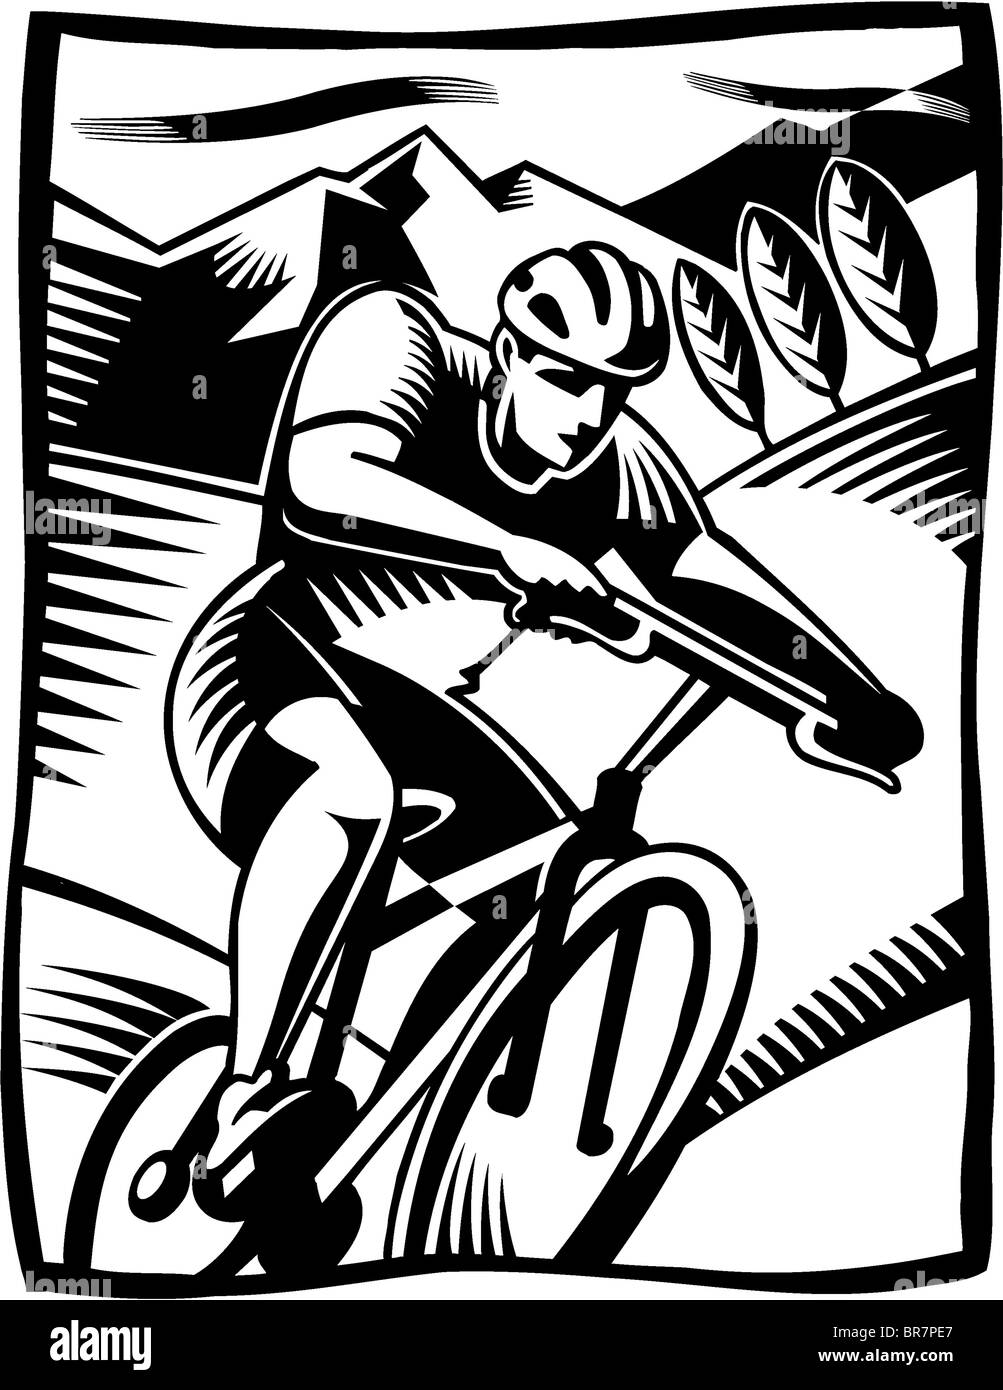 Un dessin en noir et blanc d'un homme sur un vélo vtt Banque D'Images